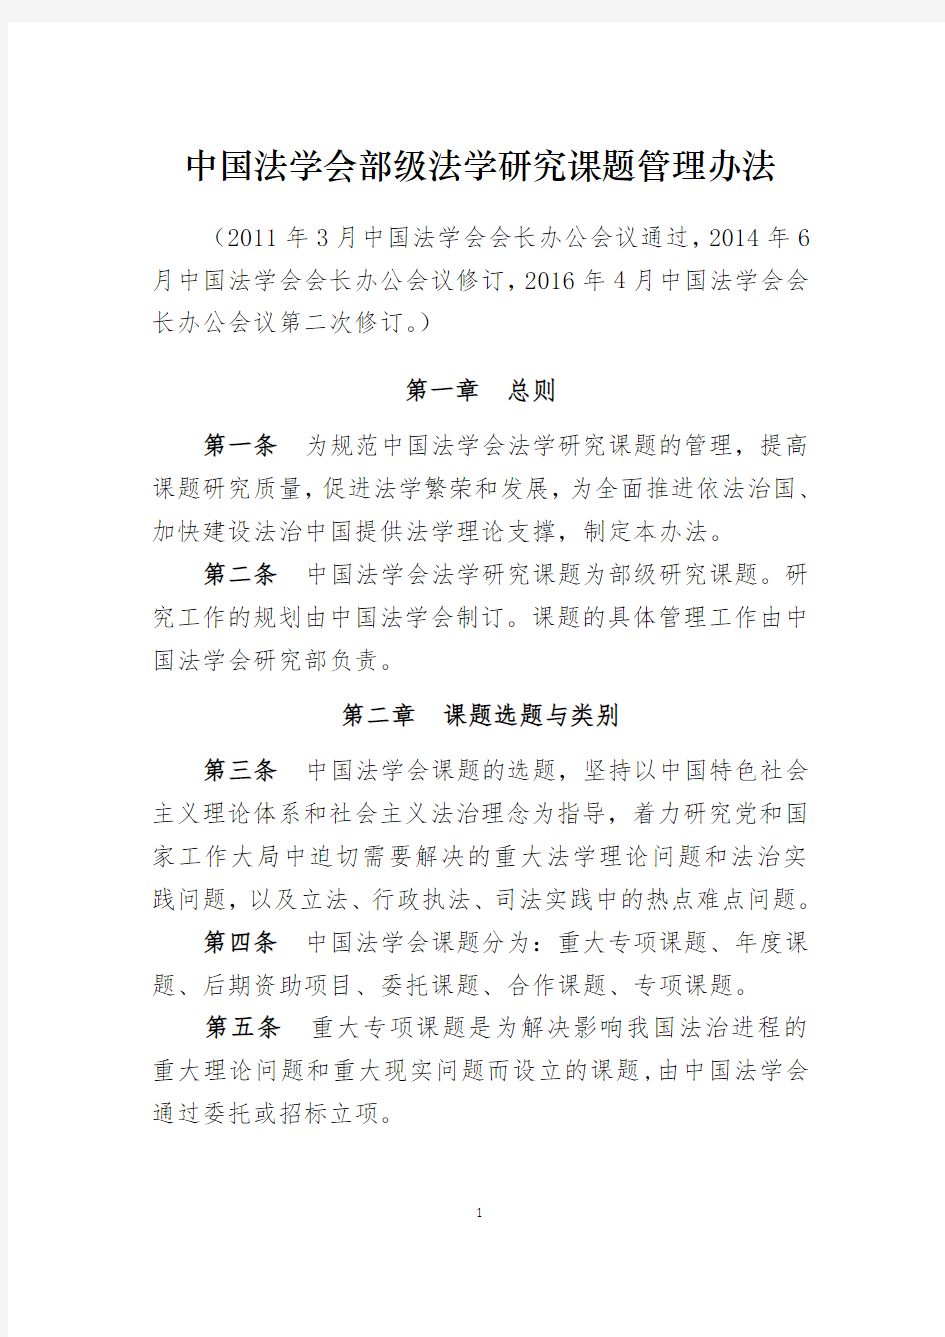 中国法学会部级法学研究课题管理办法